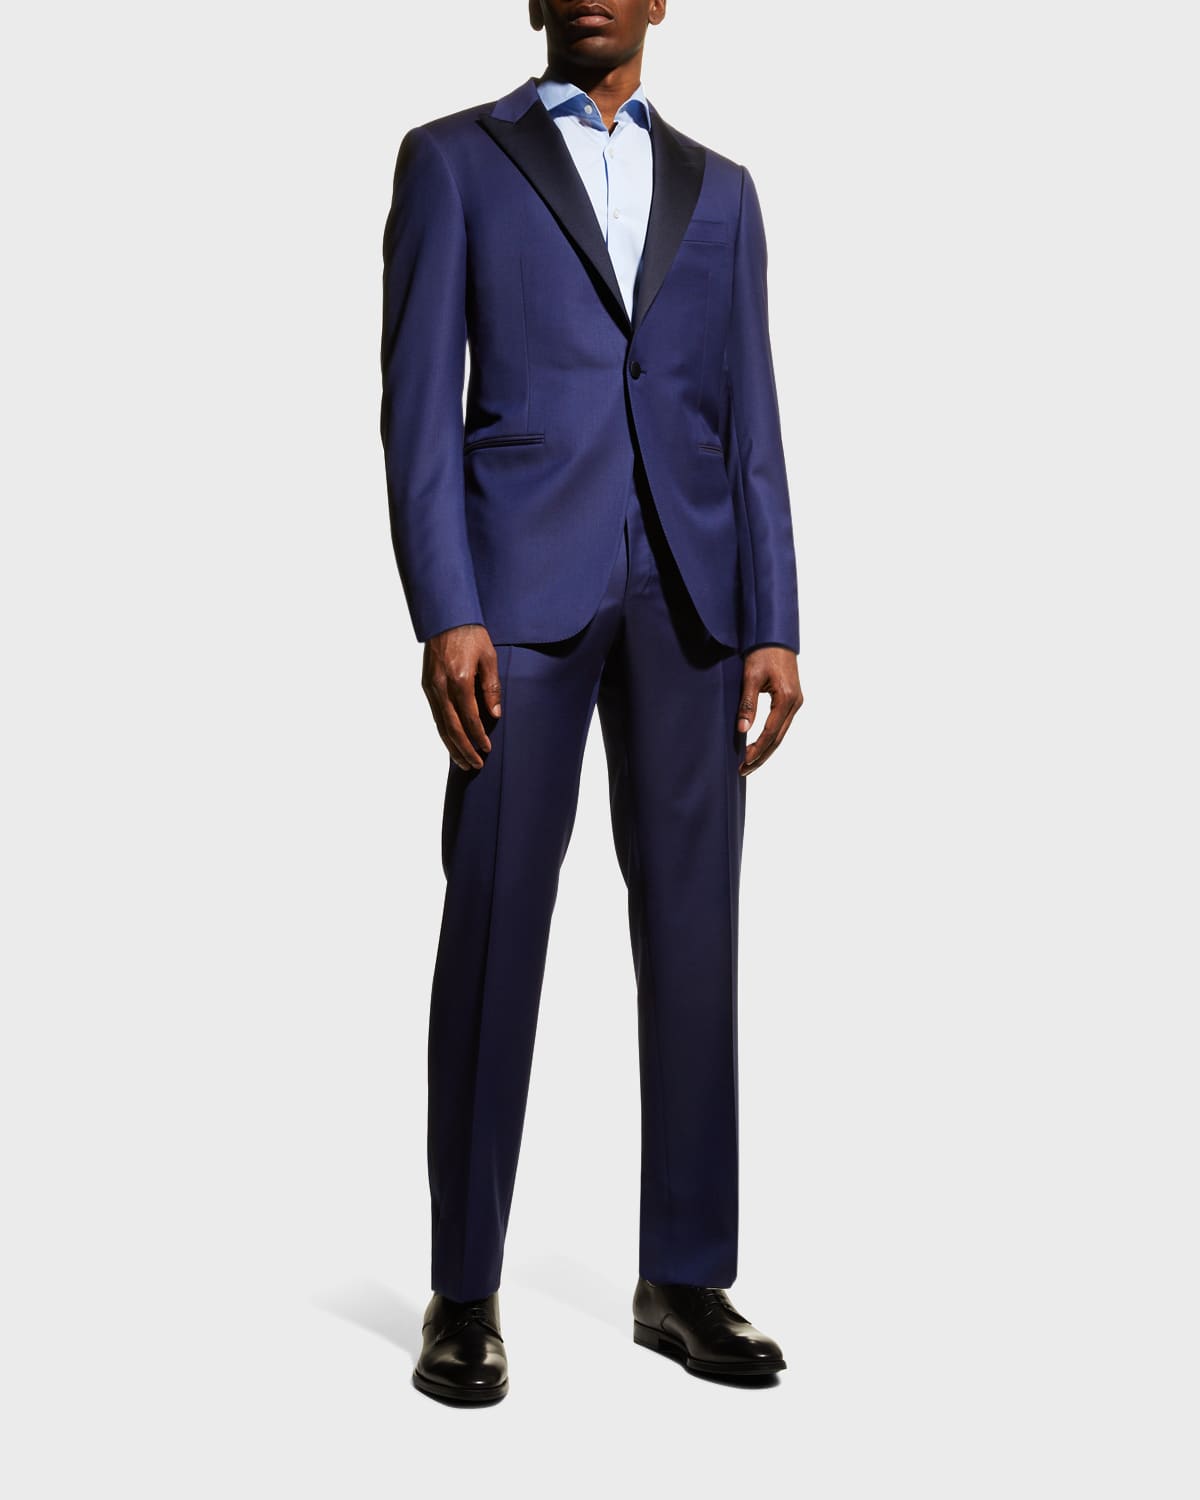 Canali Men's Peak Lapel Two-Piece Tuxedo Suit